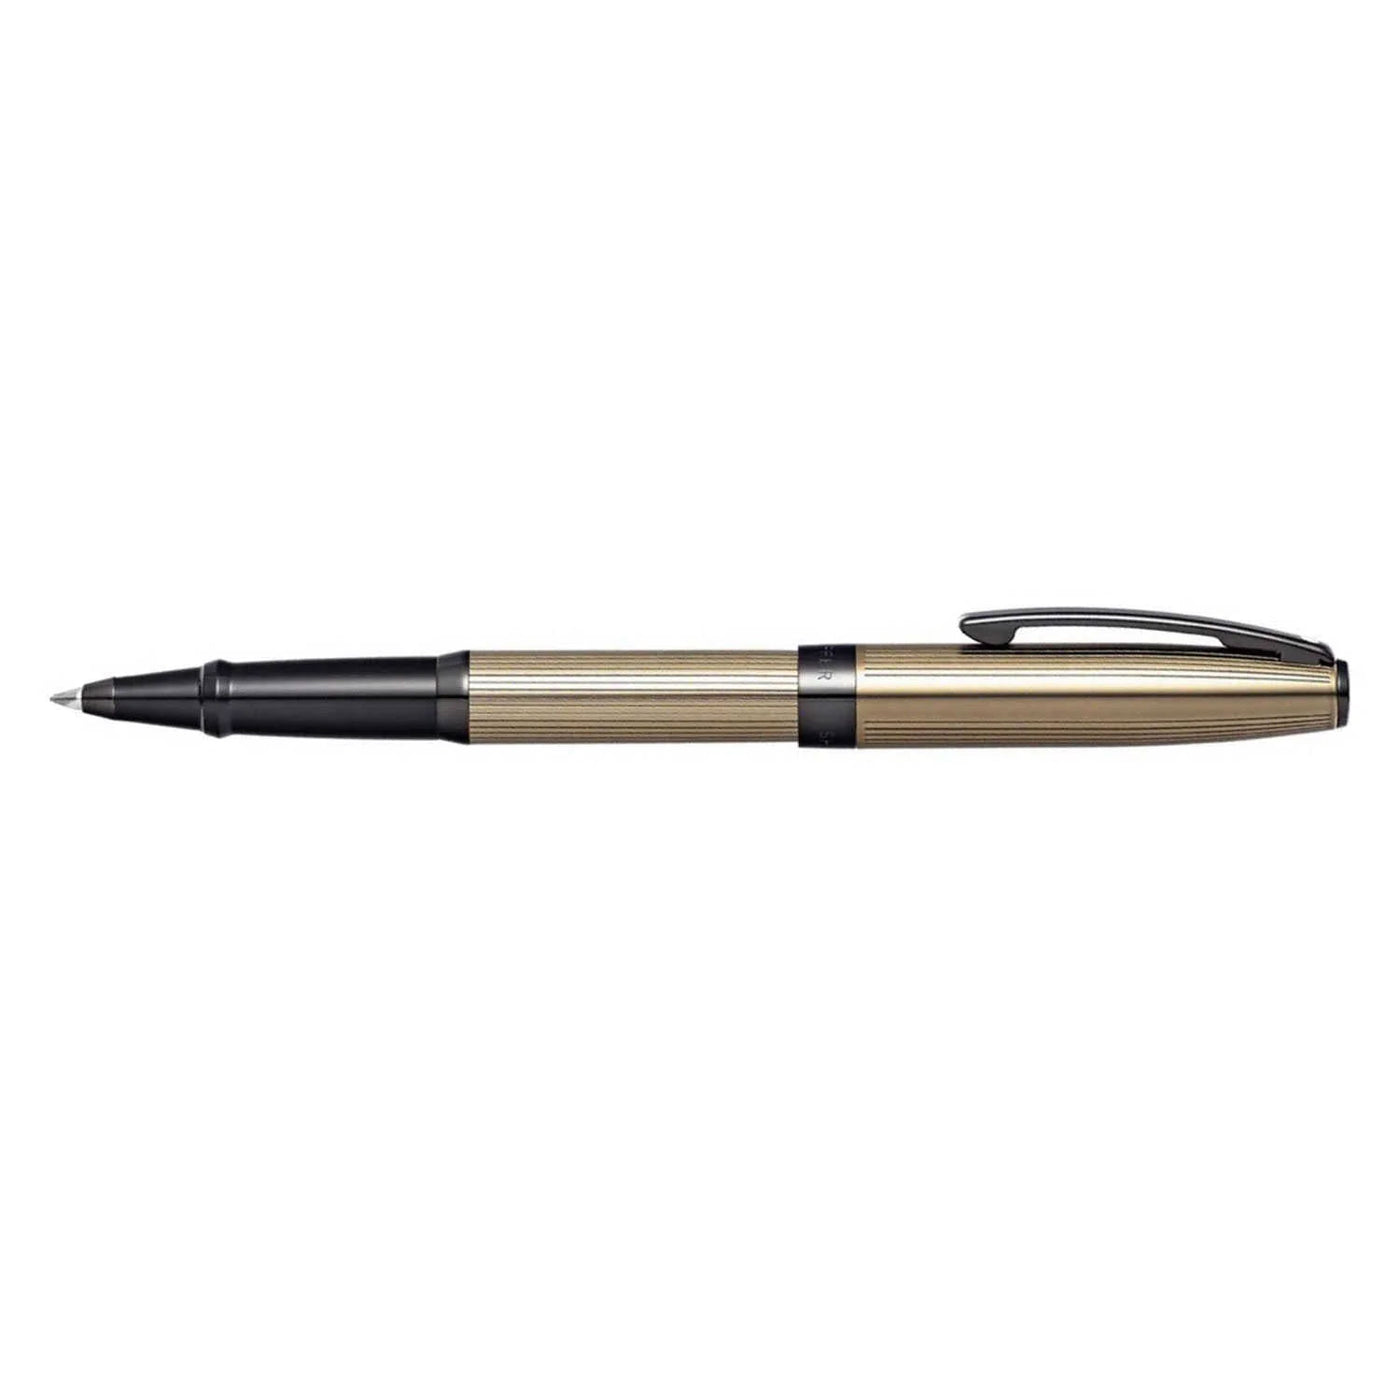 Sheaffer Sagaris Roller Ball Pen - Titanium Grey BT 3